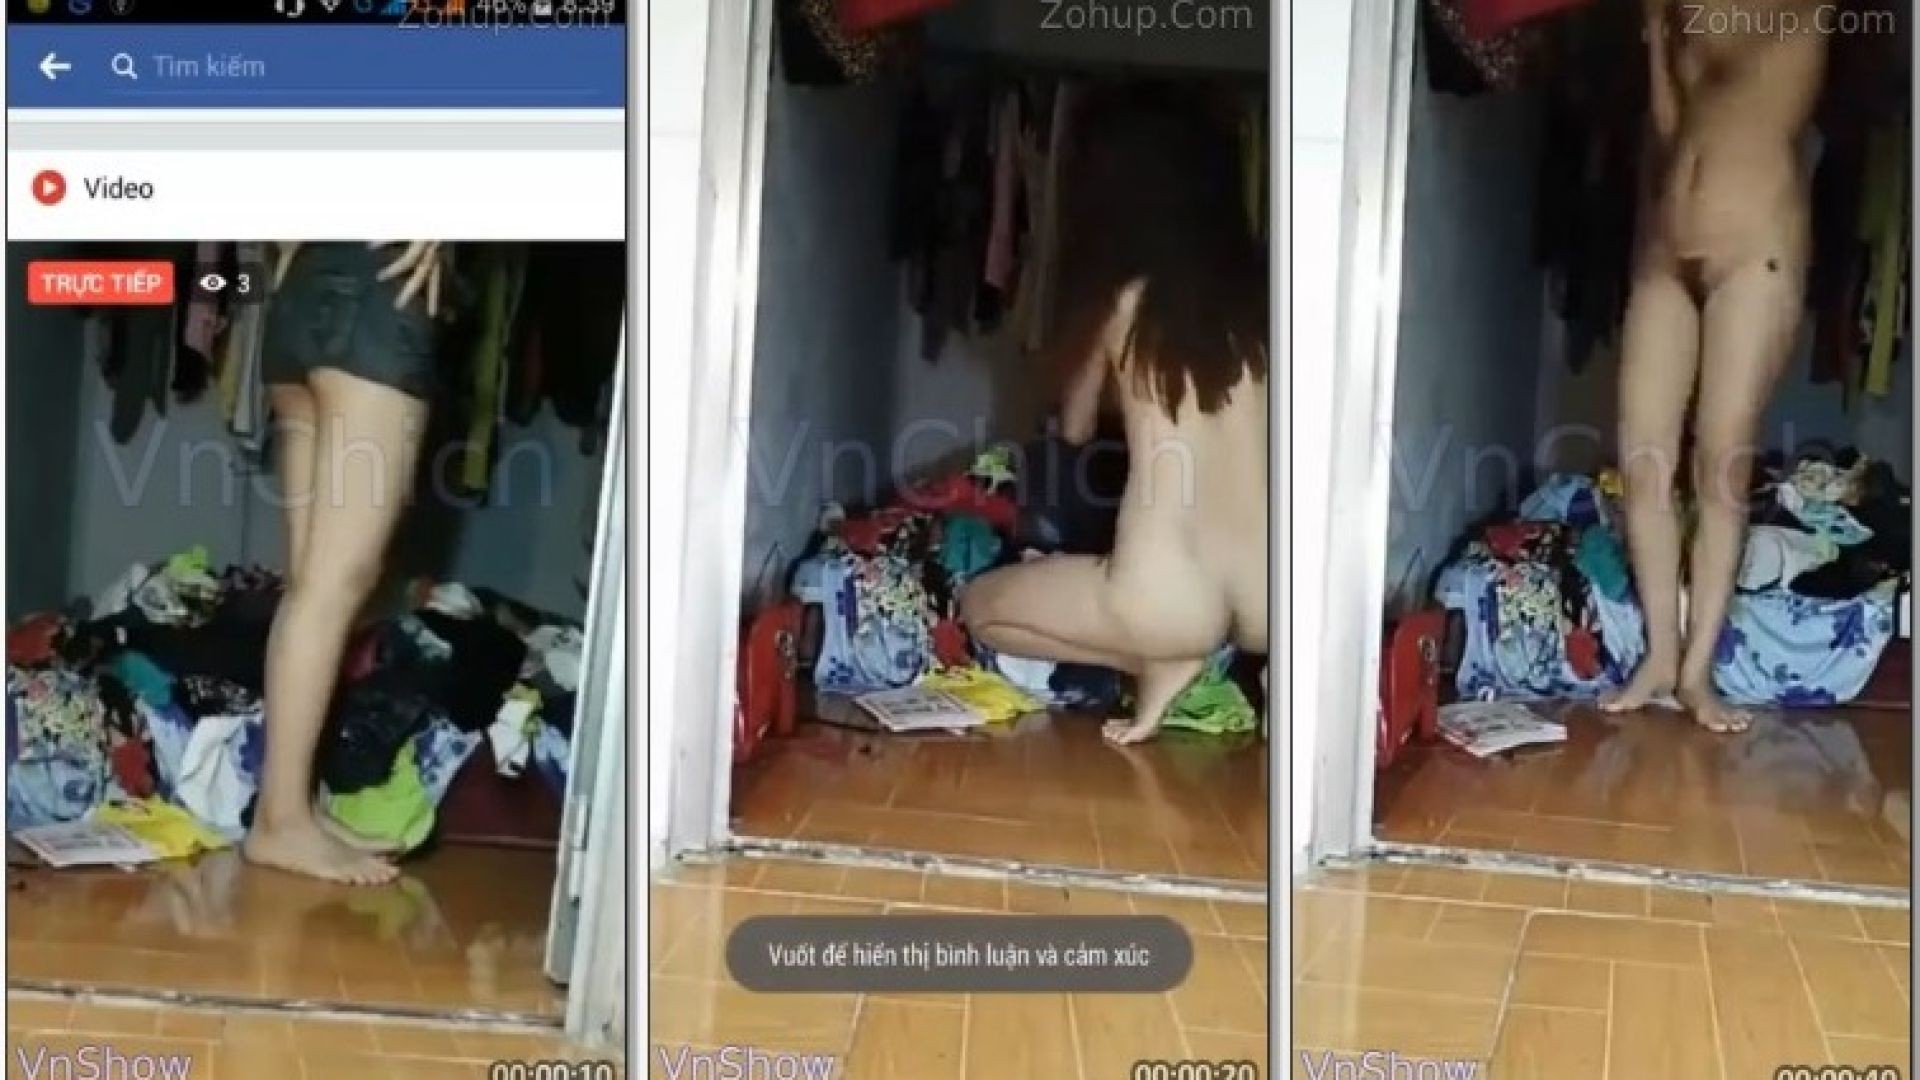 [VnShow] Em trang nguyên bị người yêu tung clip sex thủ dâm trên facebook live